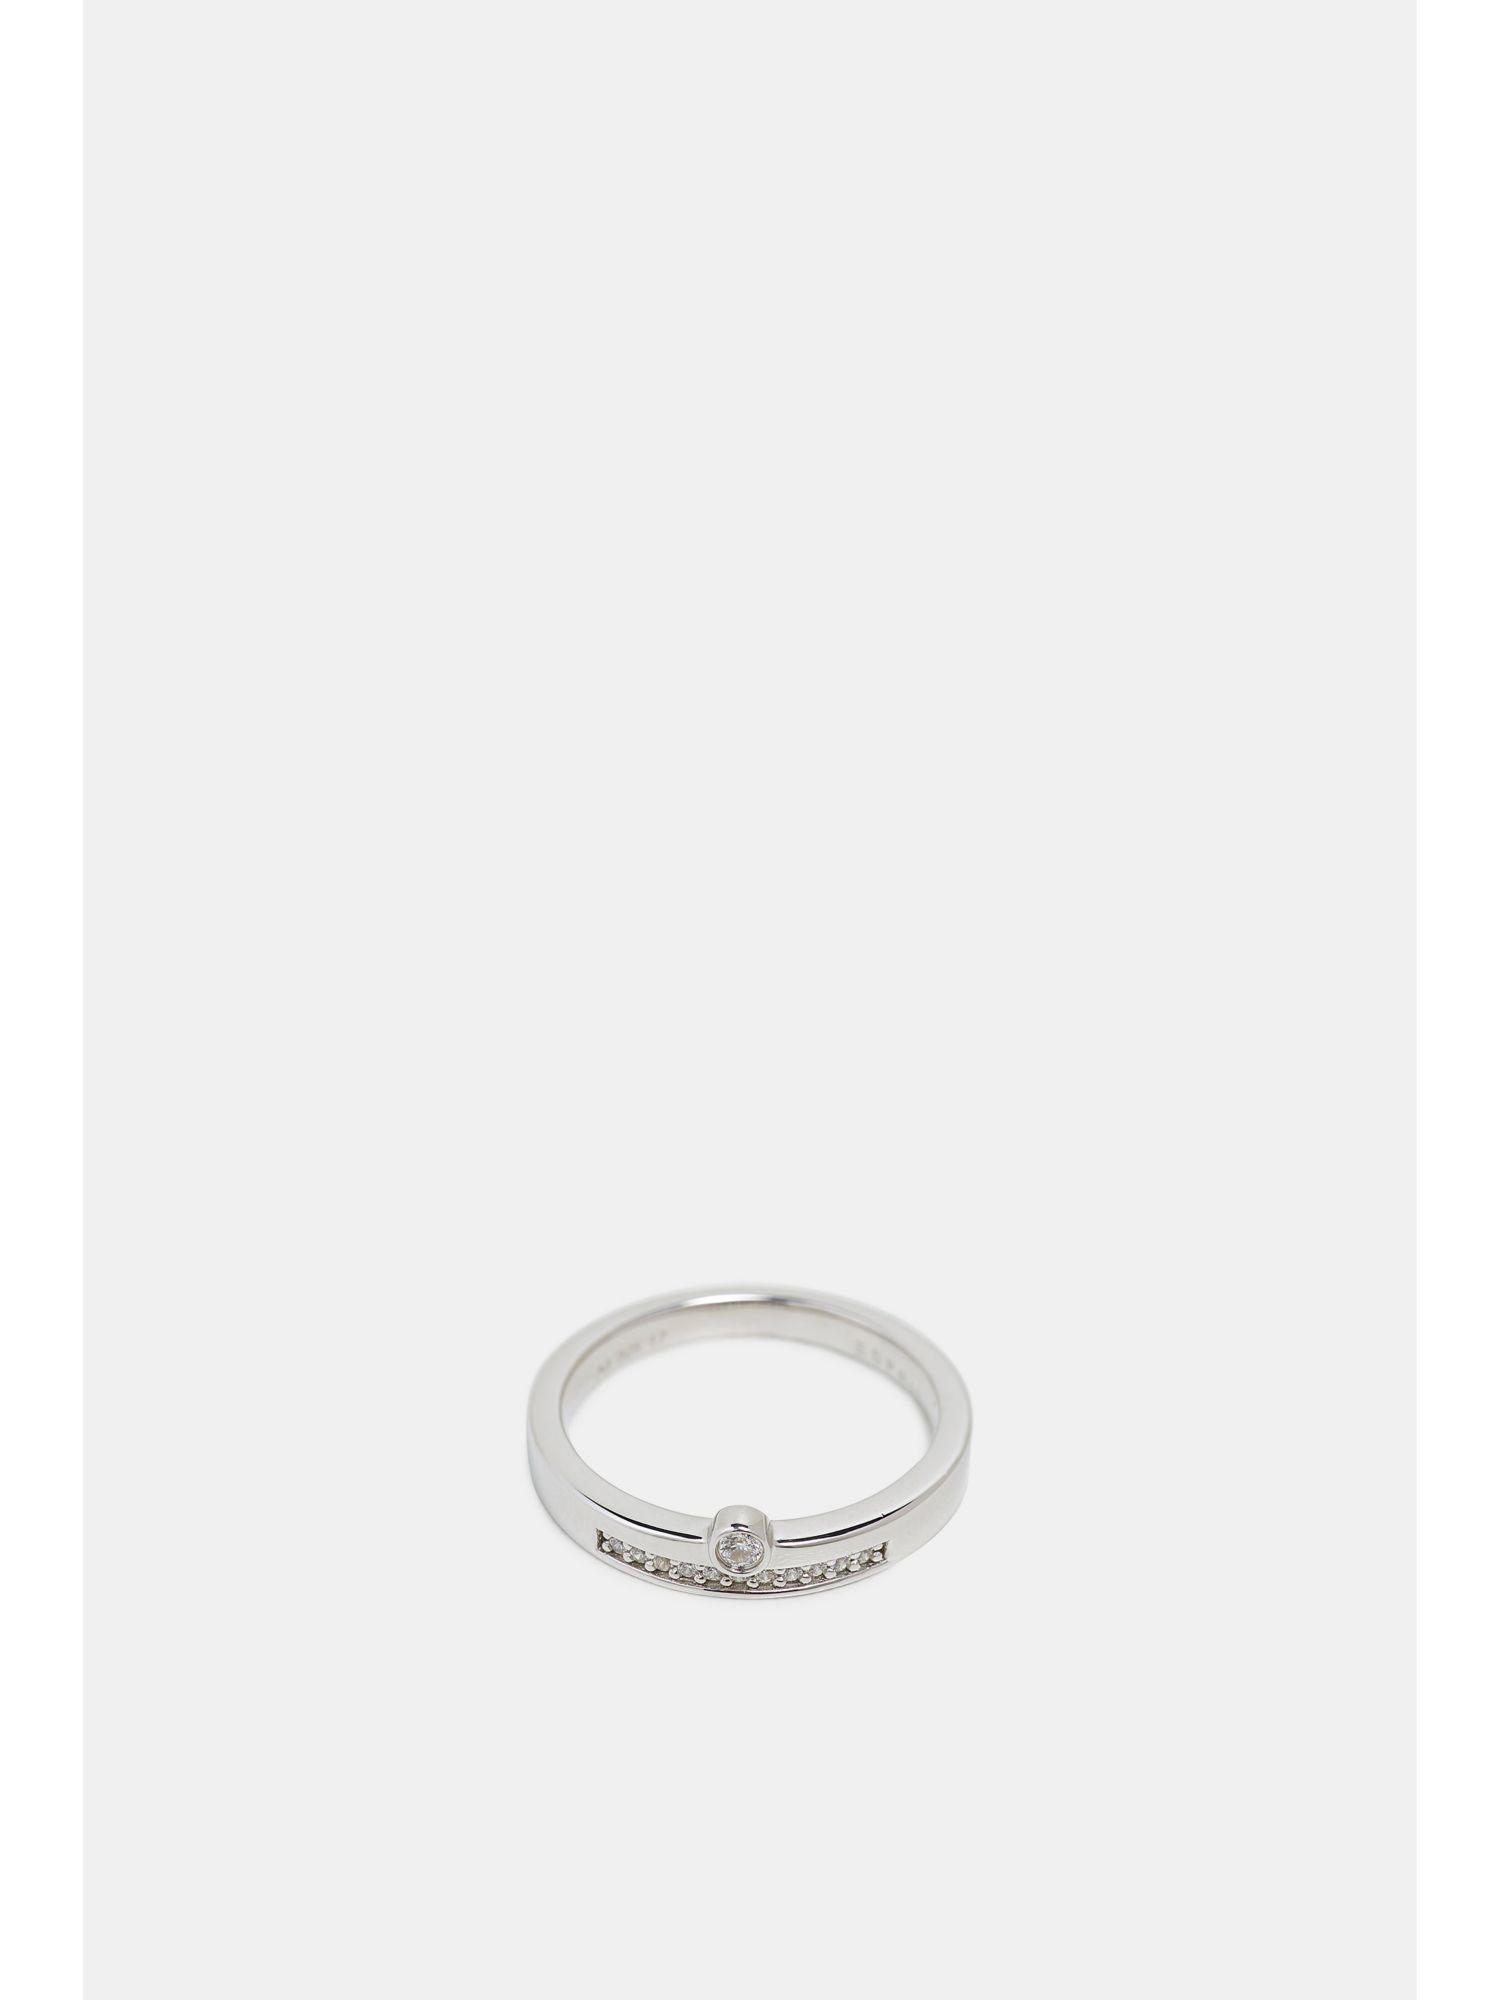 Esprit Silberring »Ring mit verschiedenen Zirkonia-Steinen, Edelstahl«  online kaufen | OTTO